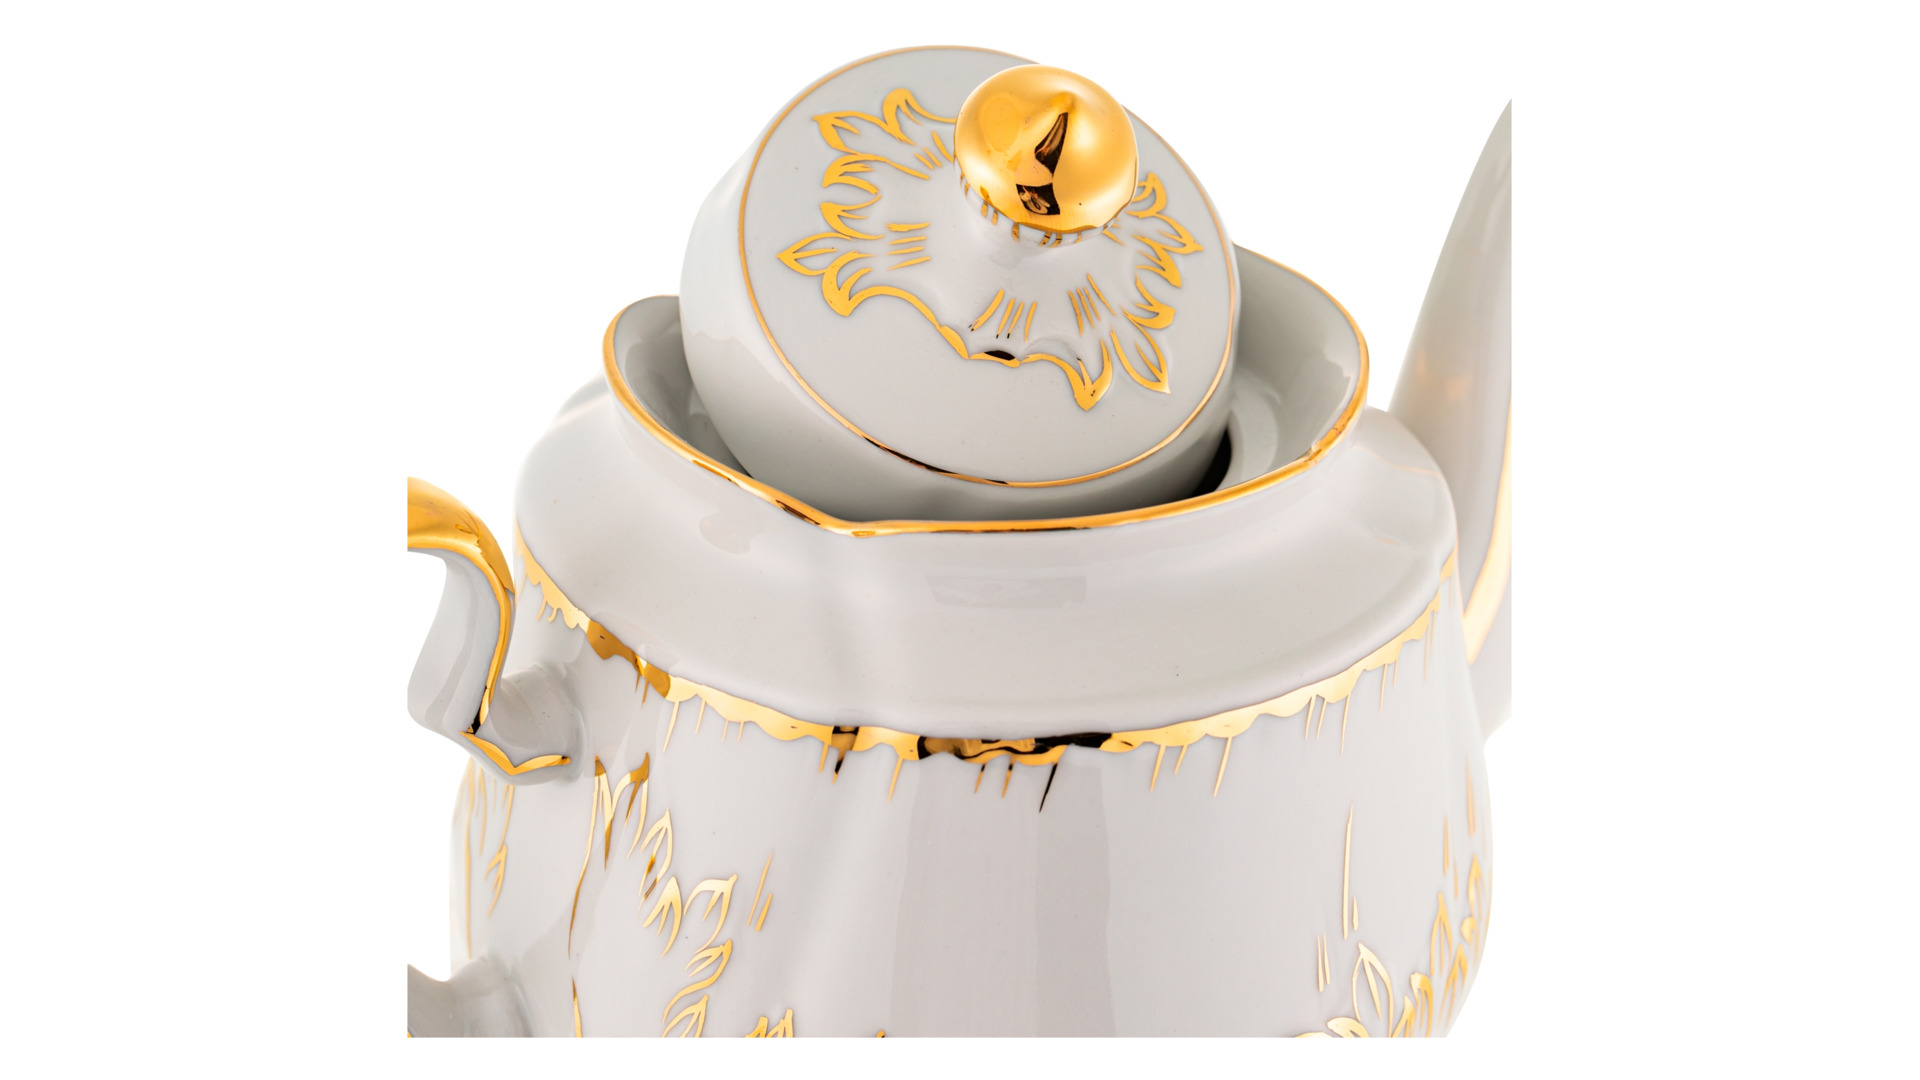 Сервиз чайный Франц Гарднер в Вербилках Кузнецовский на 6 персон 15 предметов, позолота, фарфор